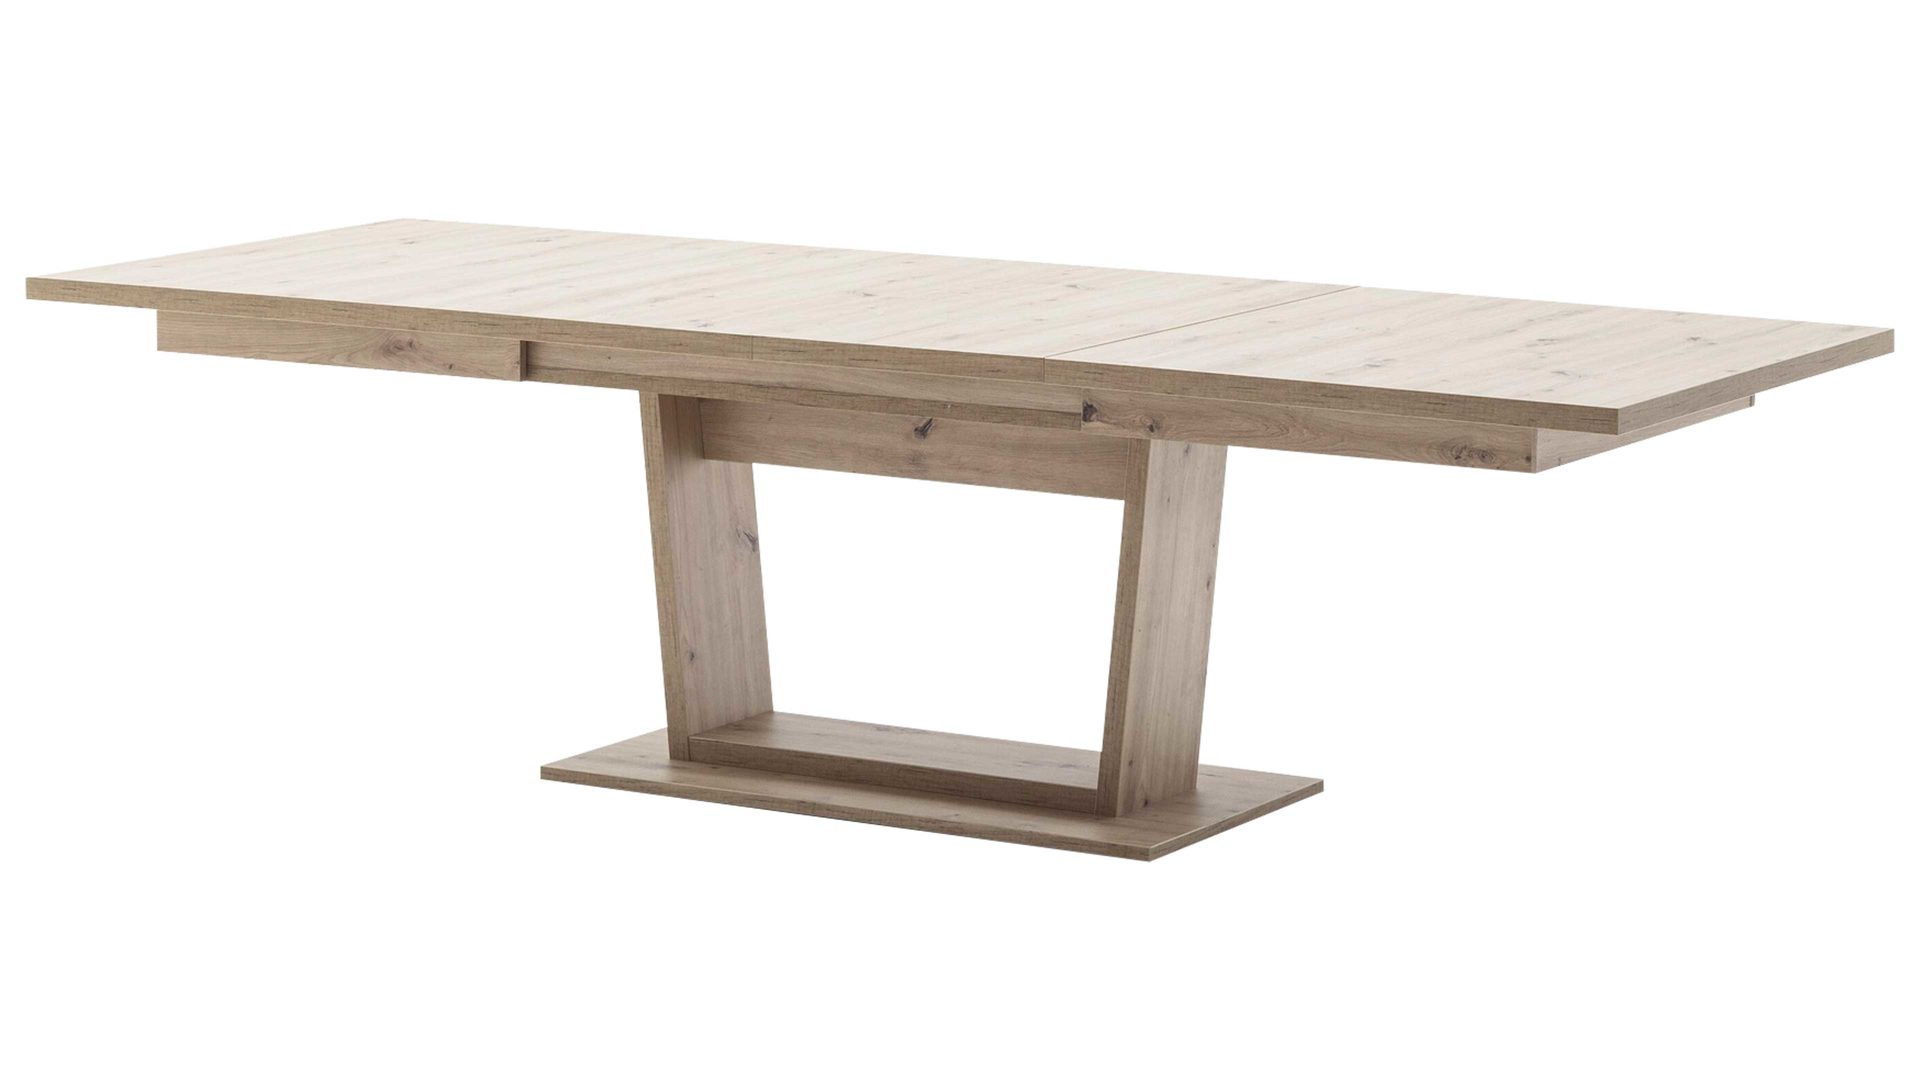 Auszugtisch Mca furniture aus Holz in Holzfarben Auszugtisch Meran Balkeneiche – ca. 180-280 x 100 cm